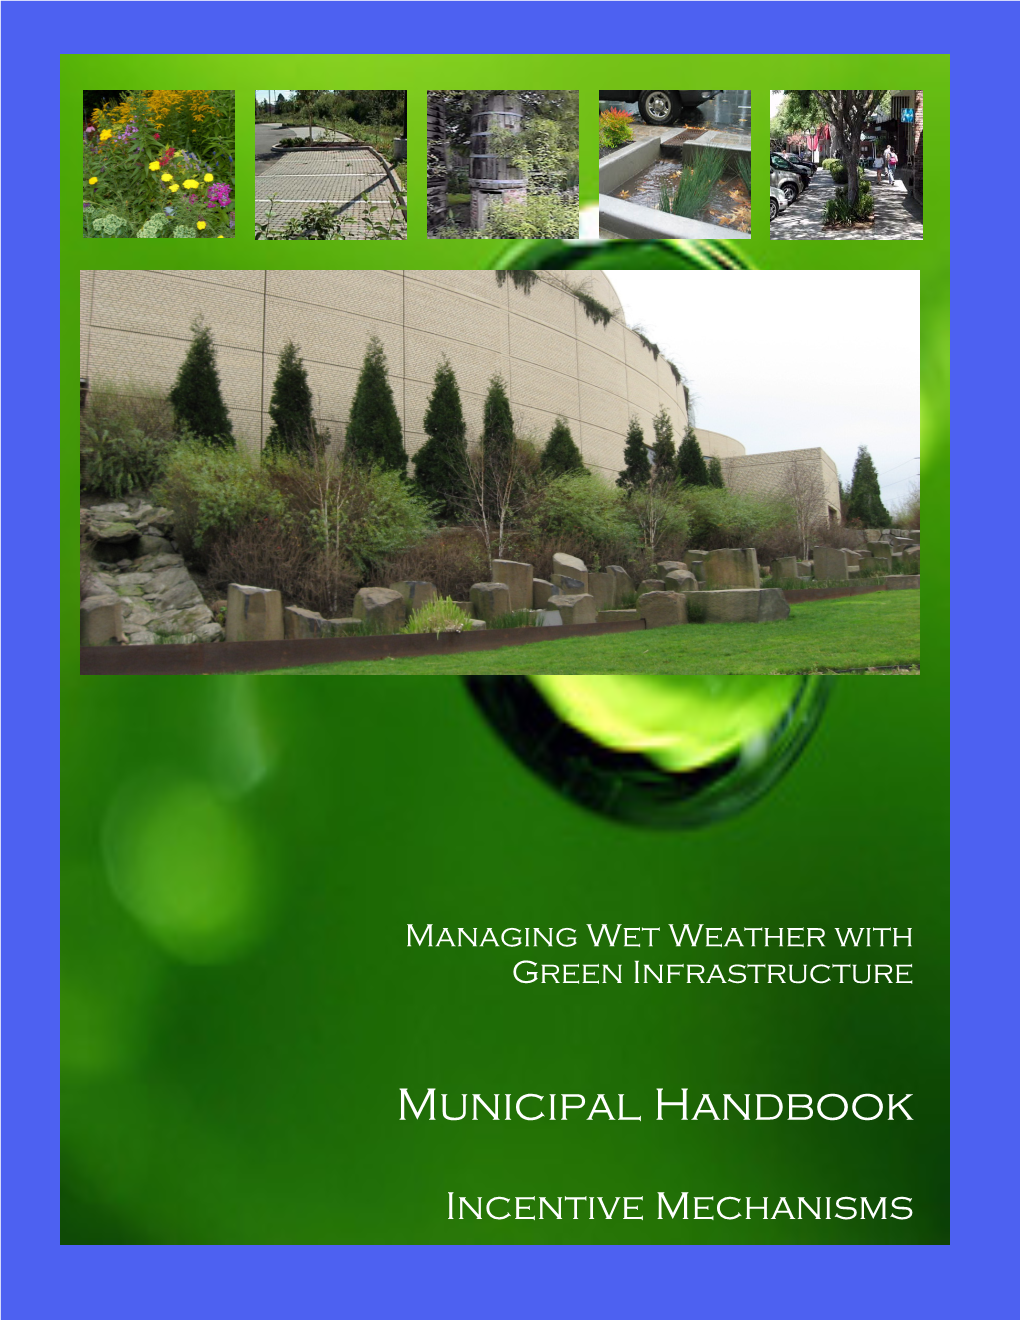 Municipal Handbook: Incentive Mechanisms